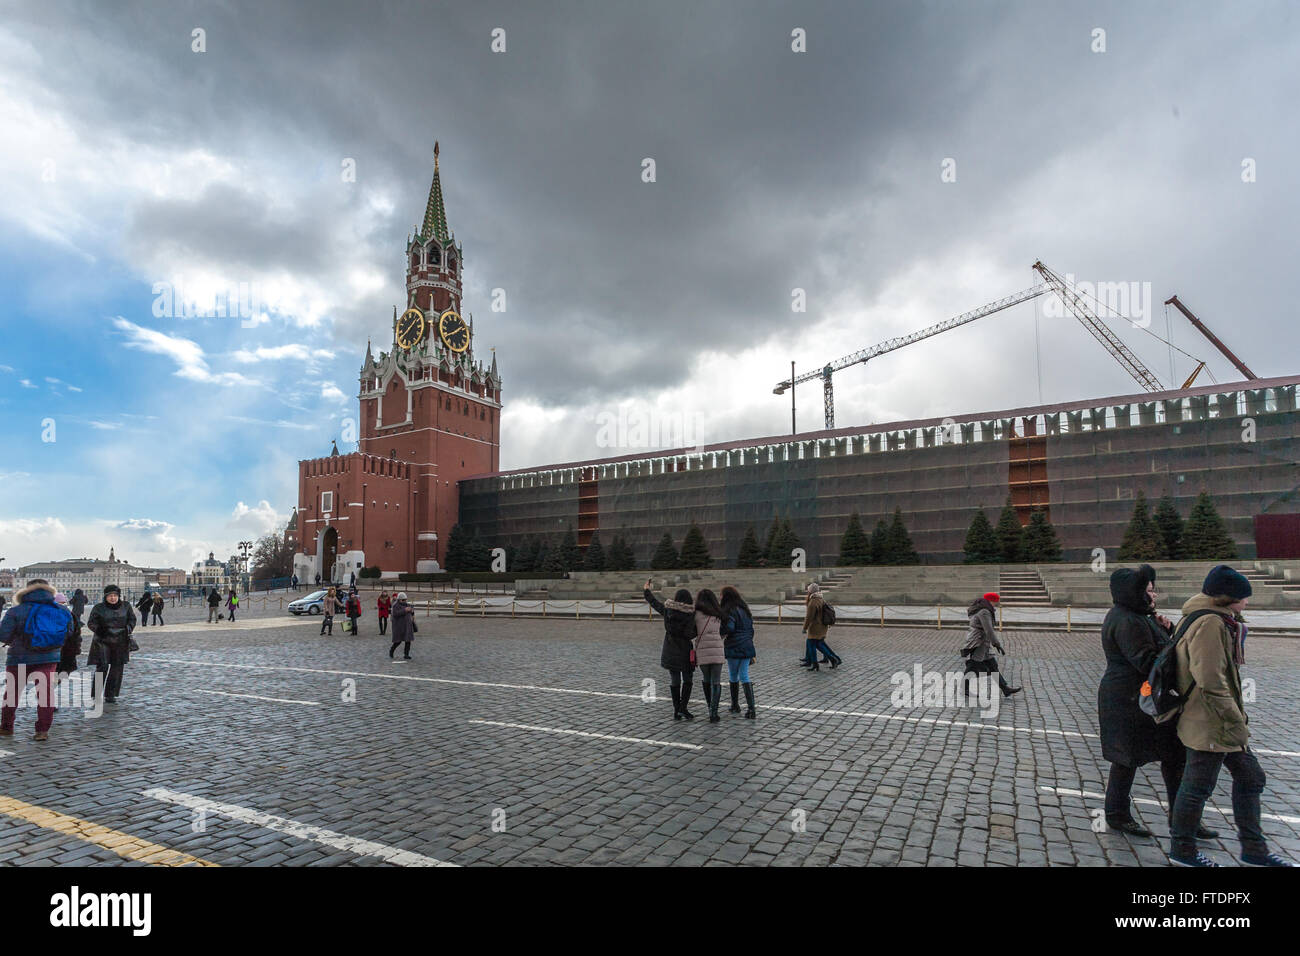 Mosca, Russia - 20 Marzo 2016: il Cremlino rottura di vecchi edifici e la costruzione di nuovi, non molto chiaro il perché. Foto Stock